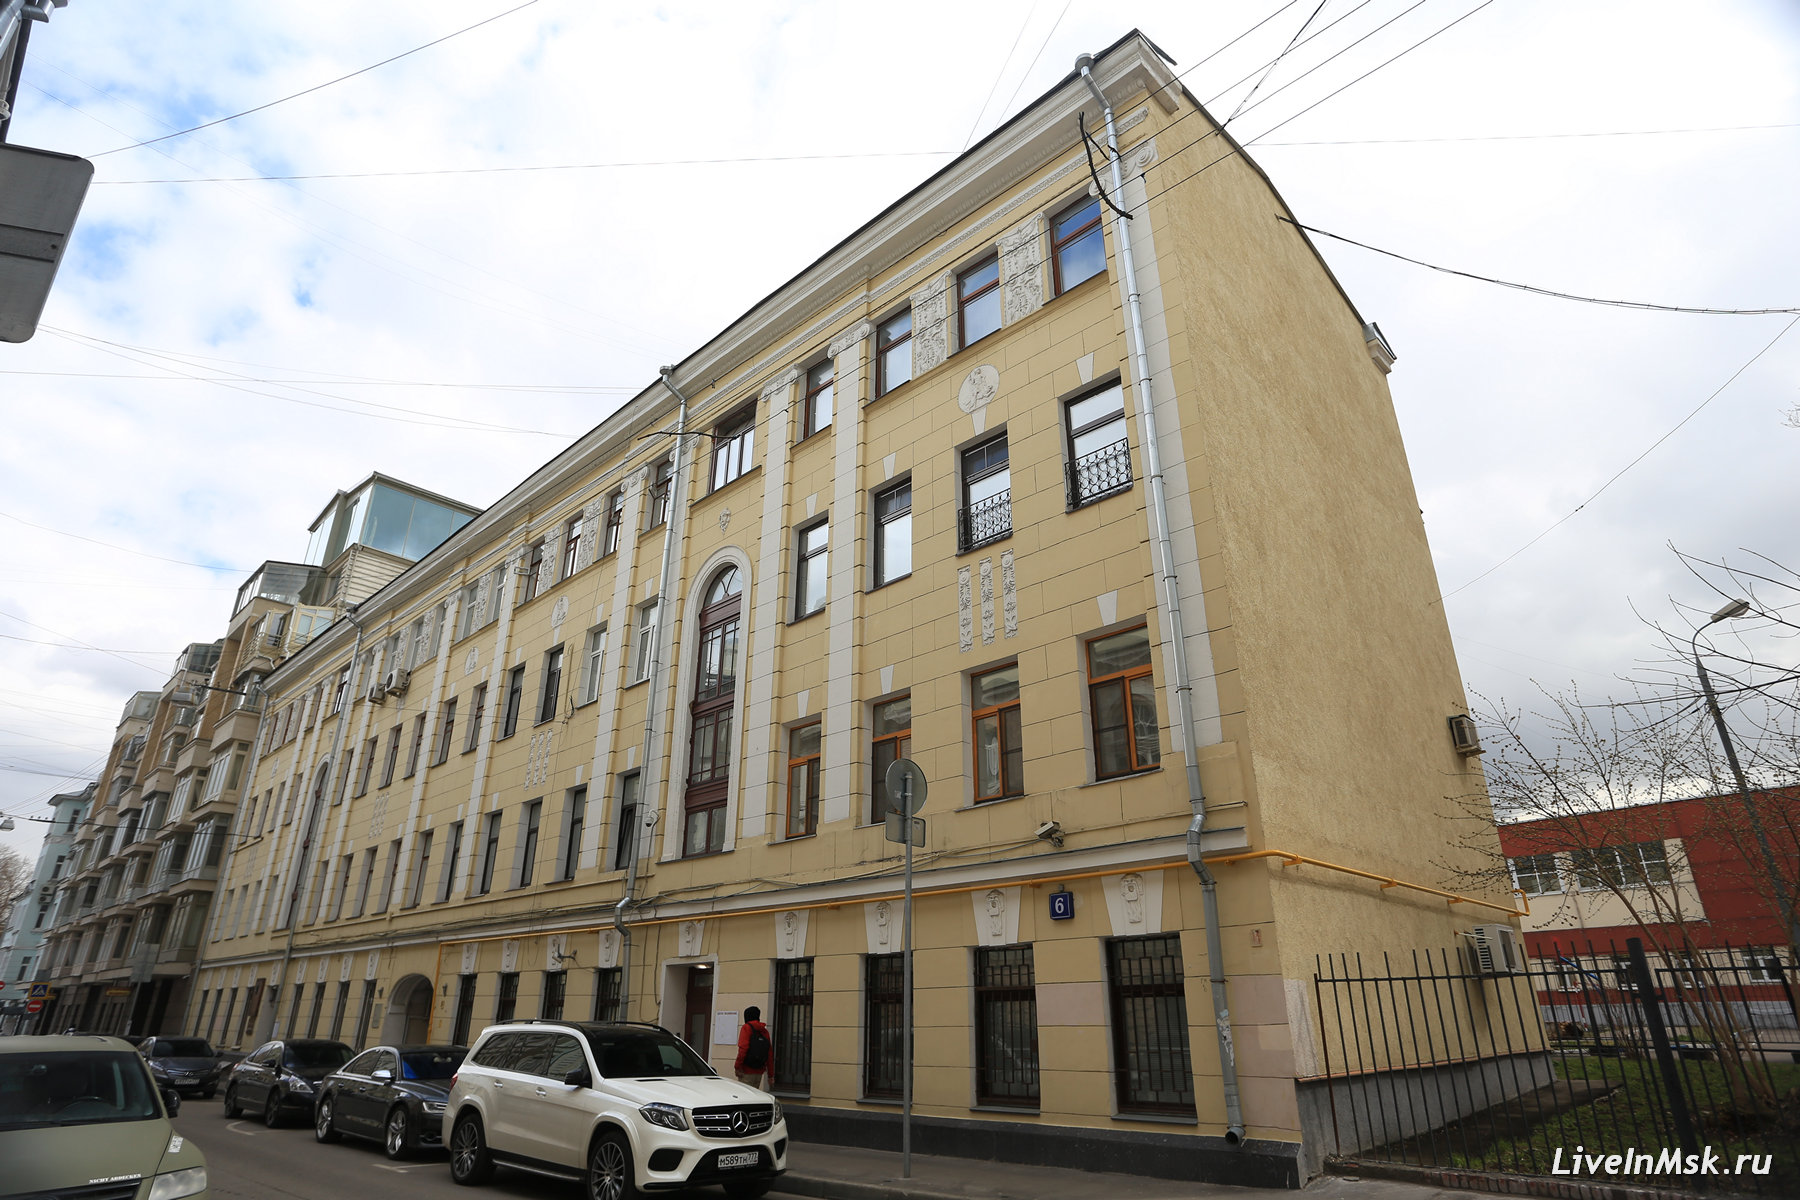 Дом, где находится музей-квартира А. Васнецова, фото 2015 года